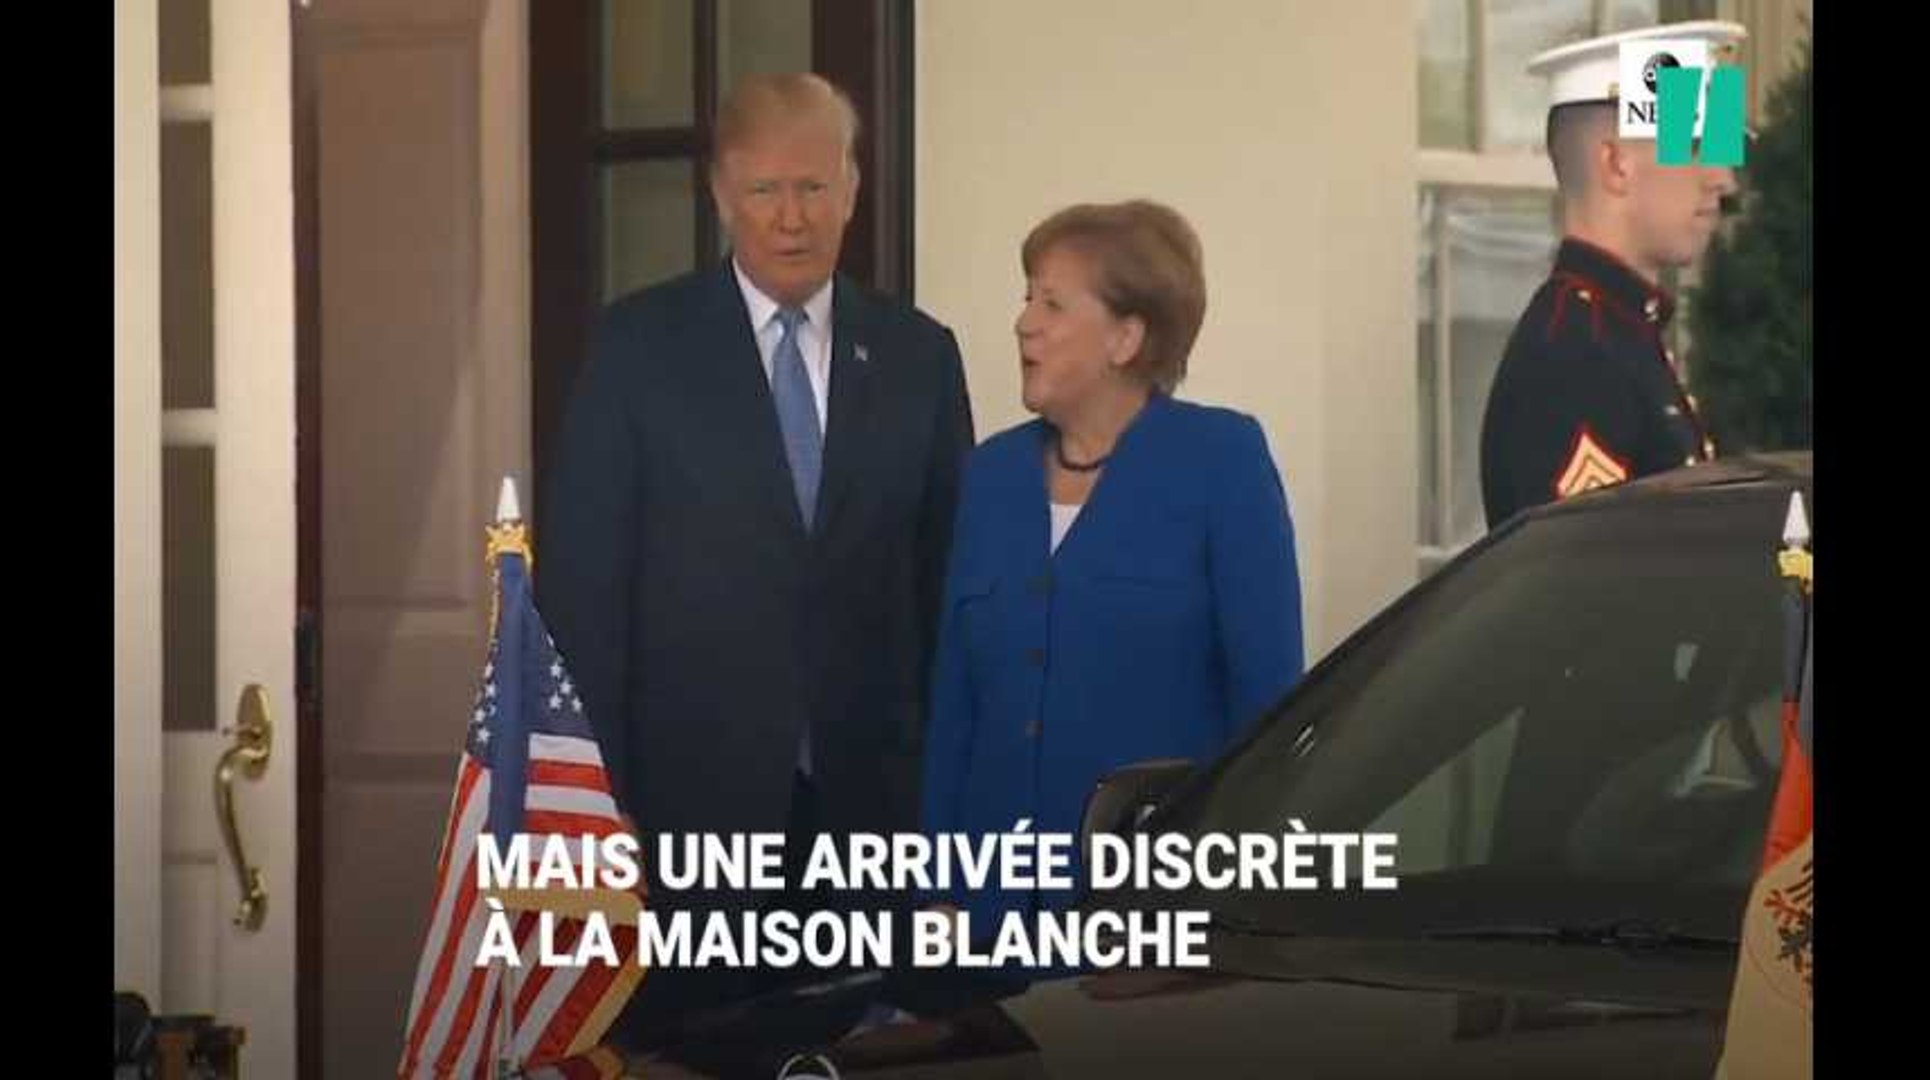 Merkel aussi a reçu une bise, mais l'accueil de Trump était très loin de  celui réservé à Macron - Vidéo Dailymotion